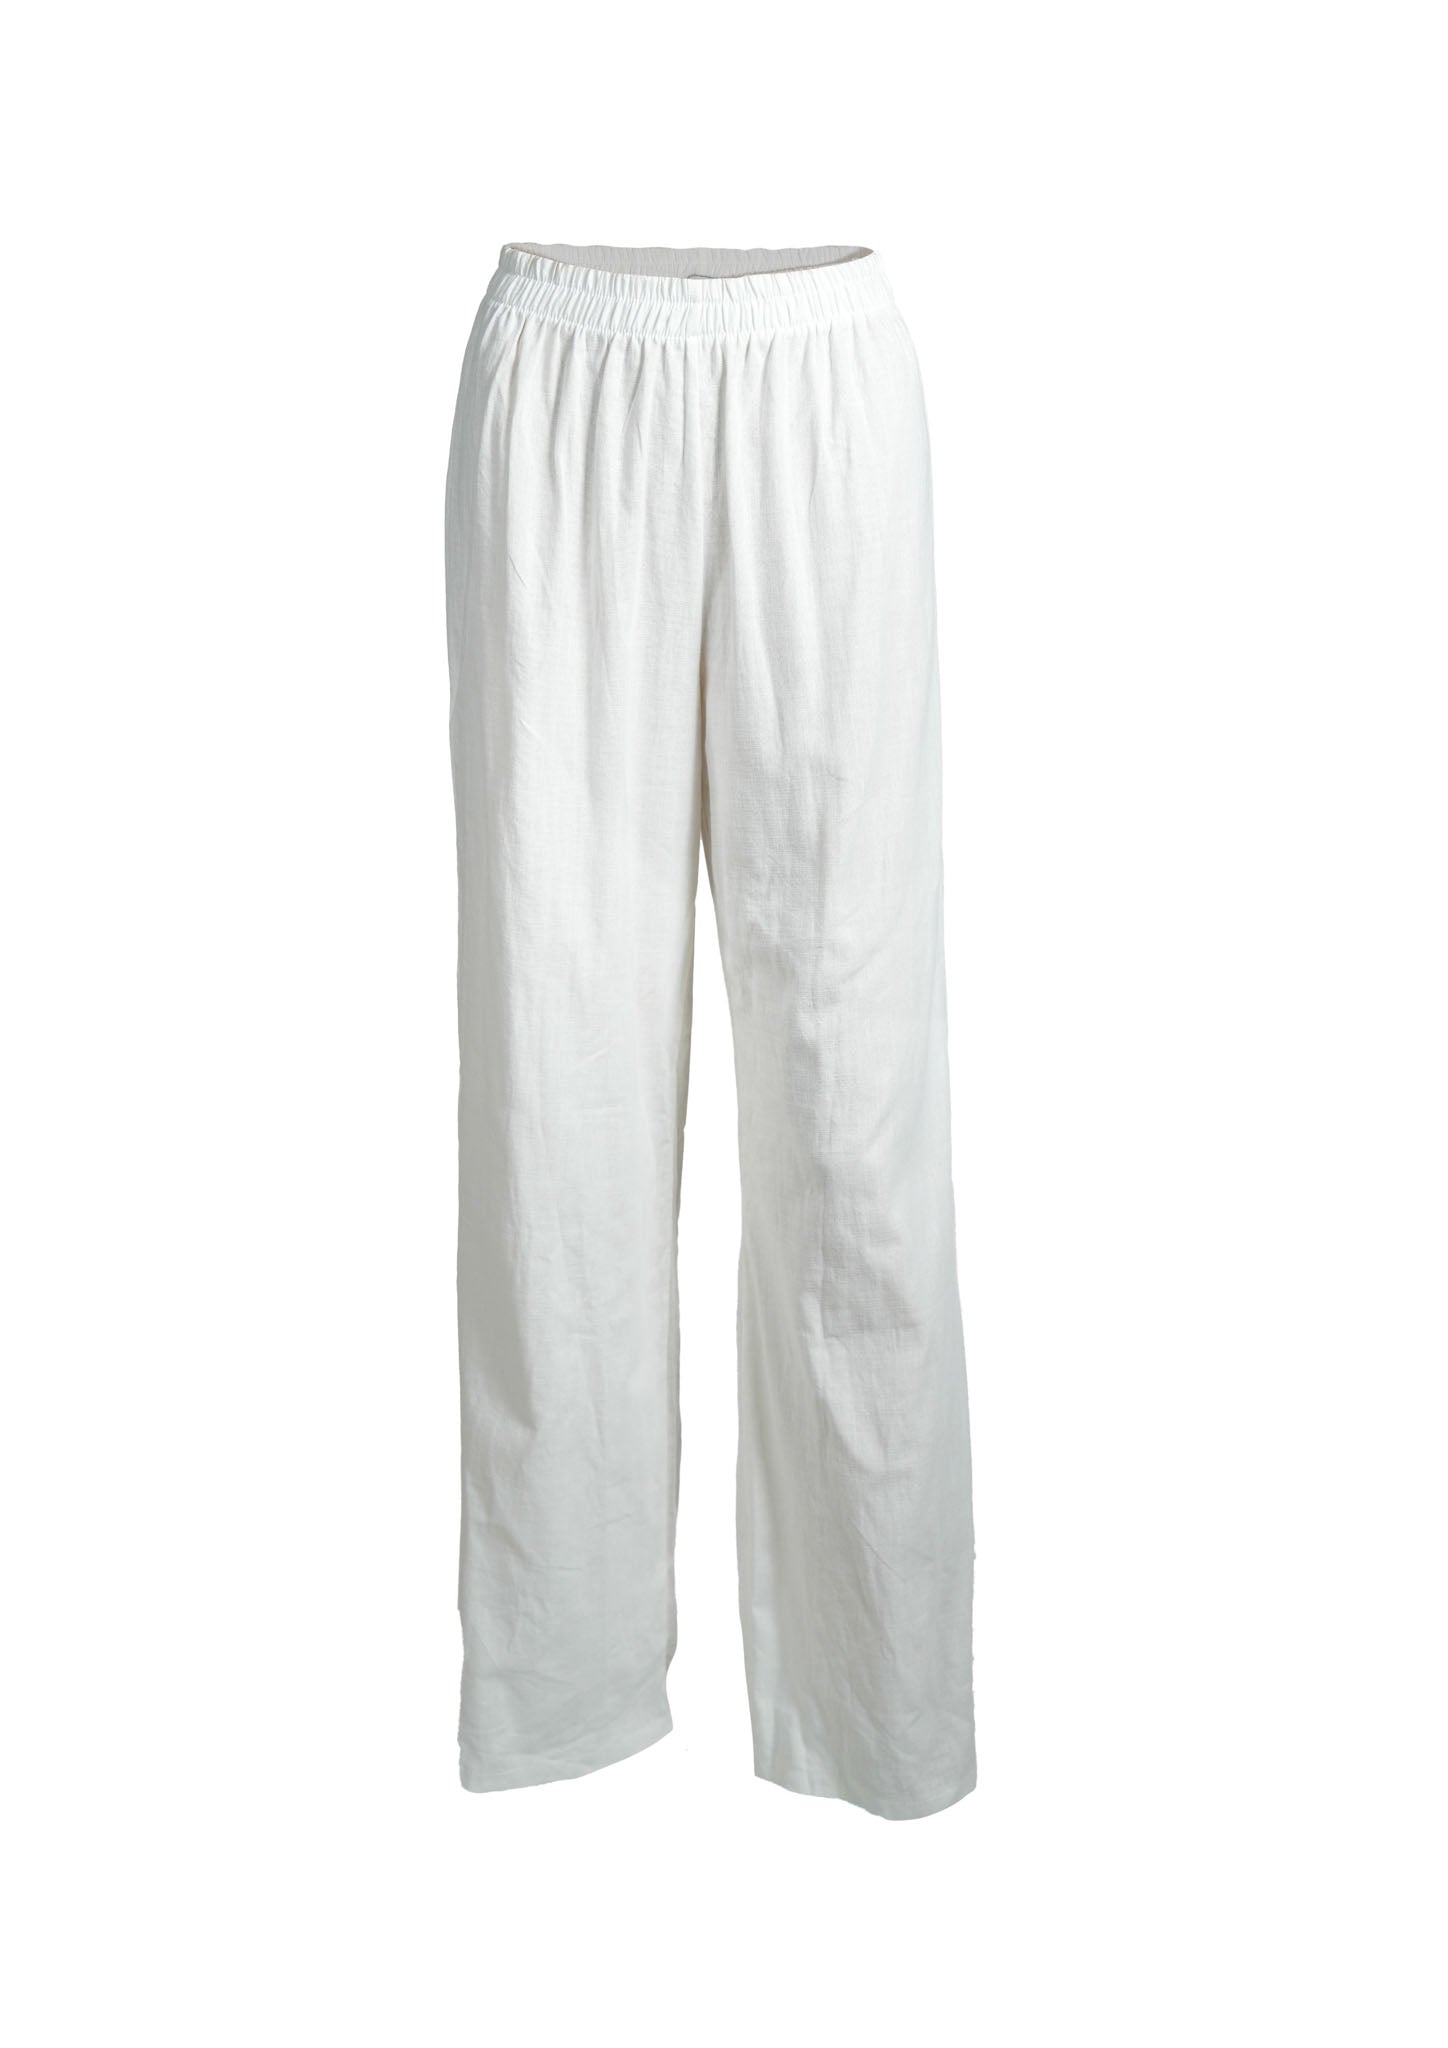 “Linen” pants